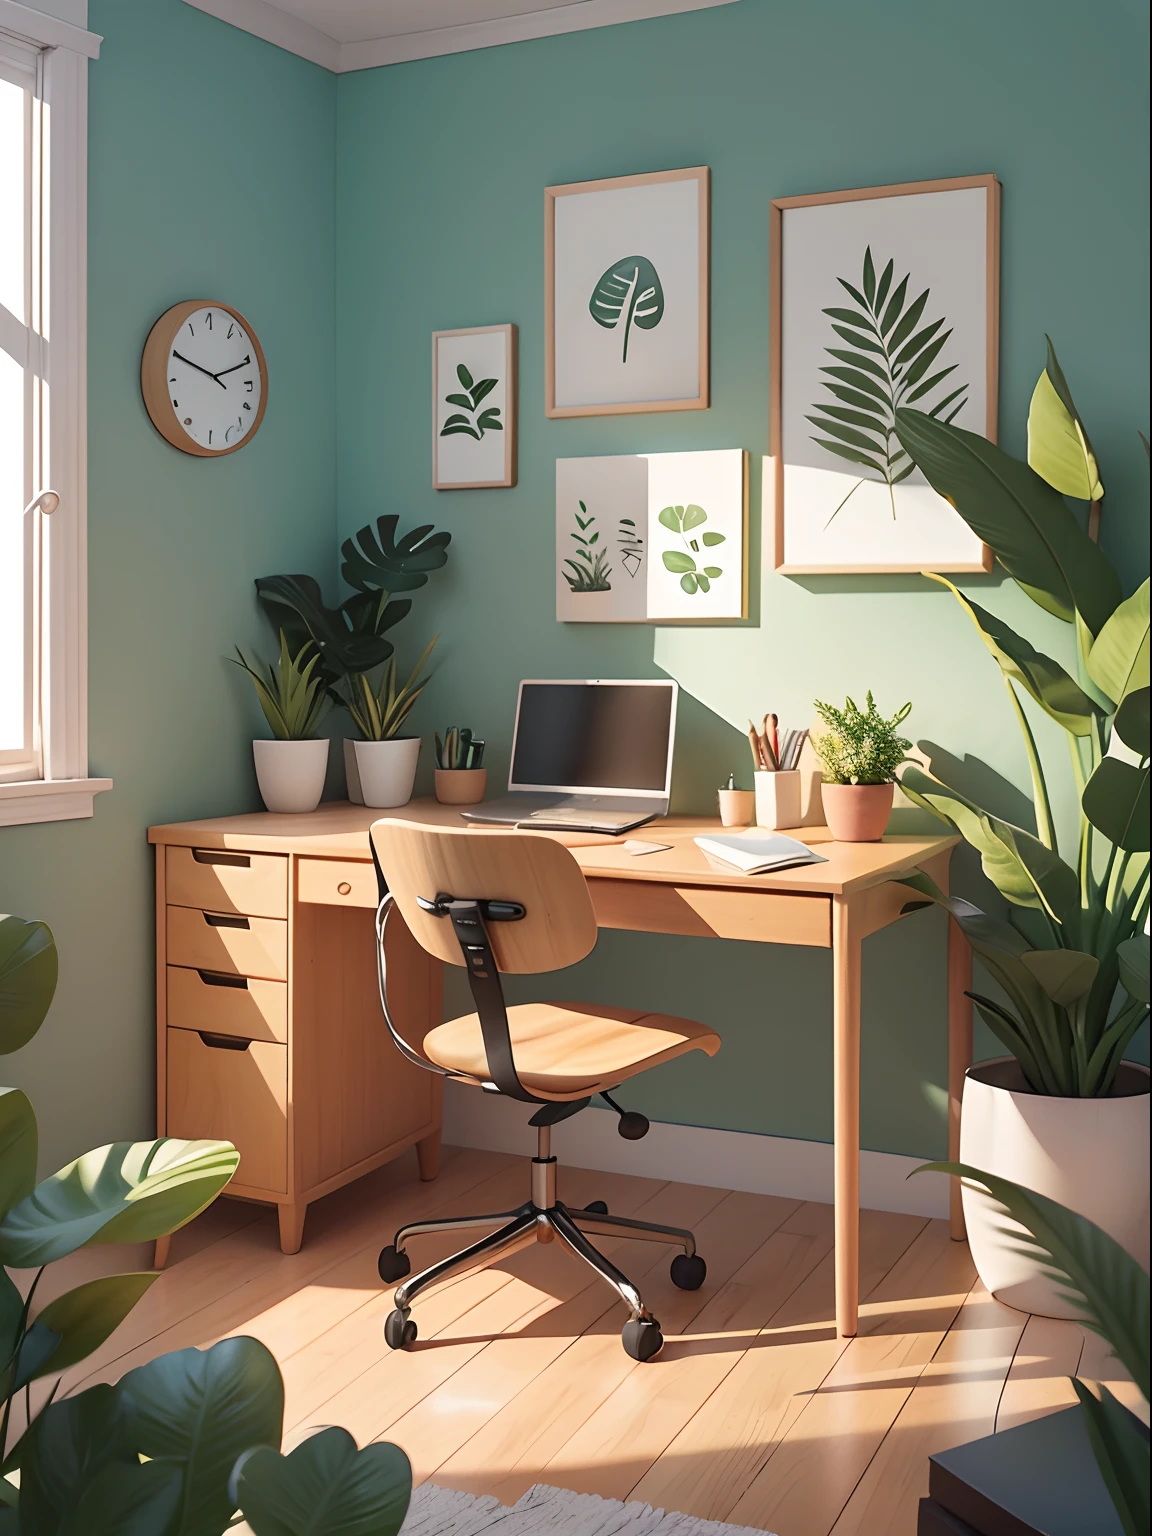 以卡通风格绘制的办公室插图. 添加自然元素, 作为植物和花卉, 使用柔和的色调营造轻松的氛围.